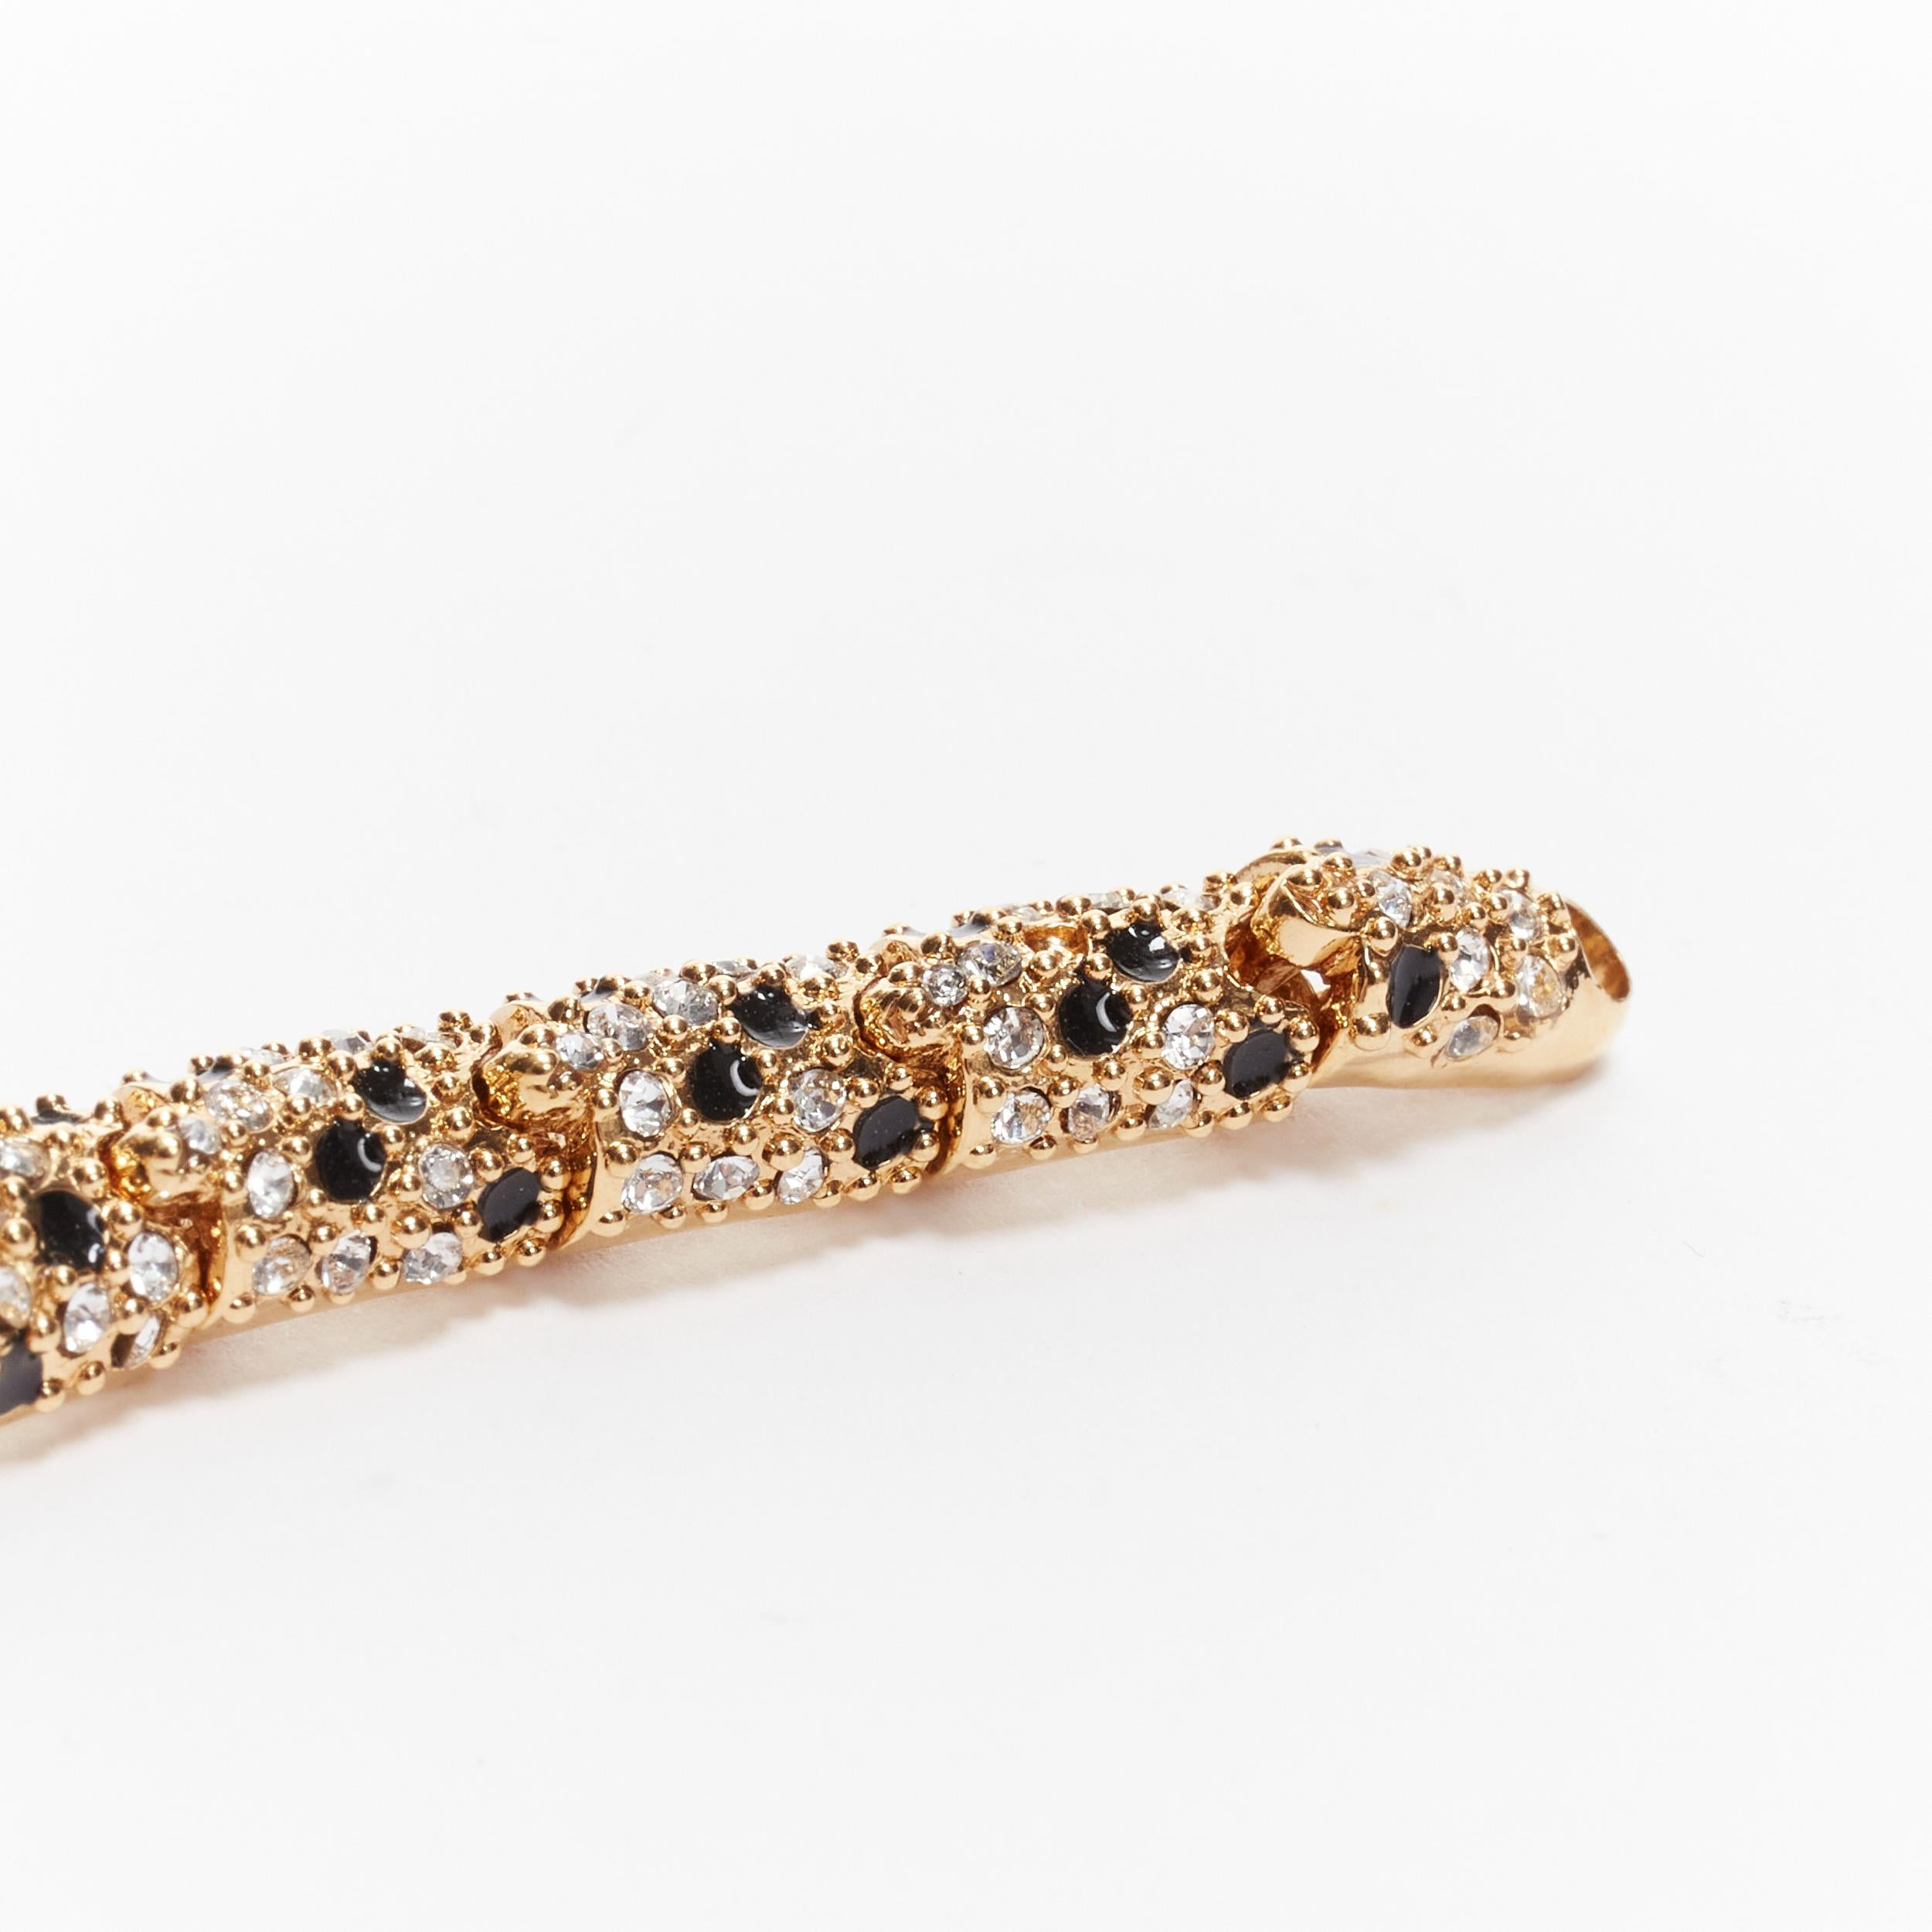 rare SAINT LAURENT Hedi Slimane crystal encrusted gold lion  cocktail bracelet 6